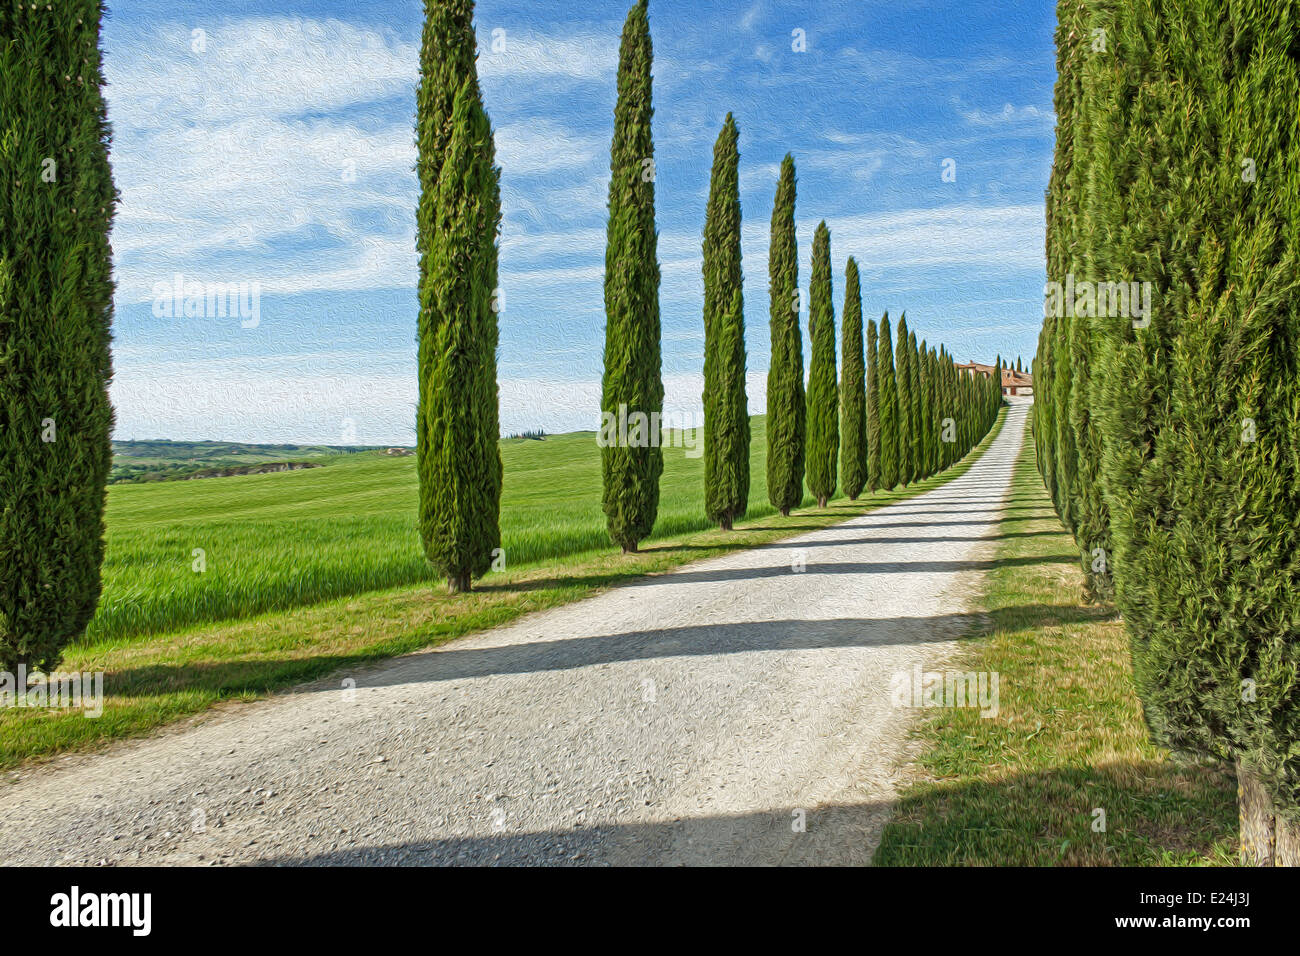 Cypress trees lining a road - Tuscany- Italy Stock Photo